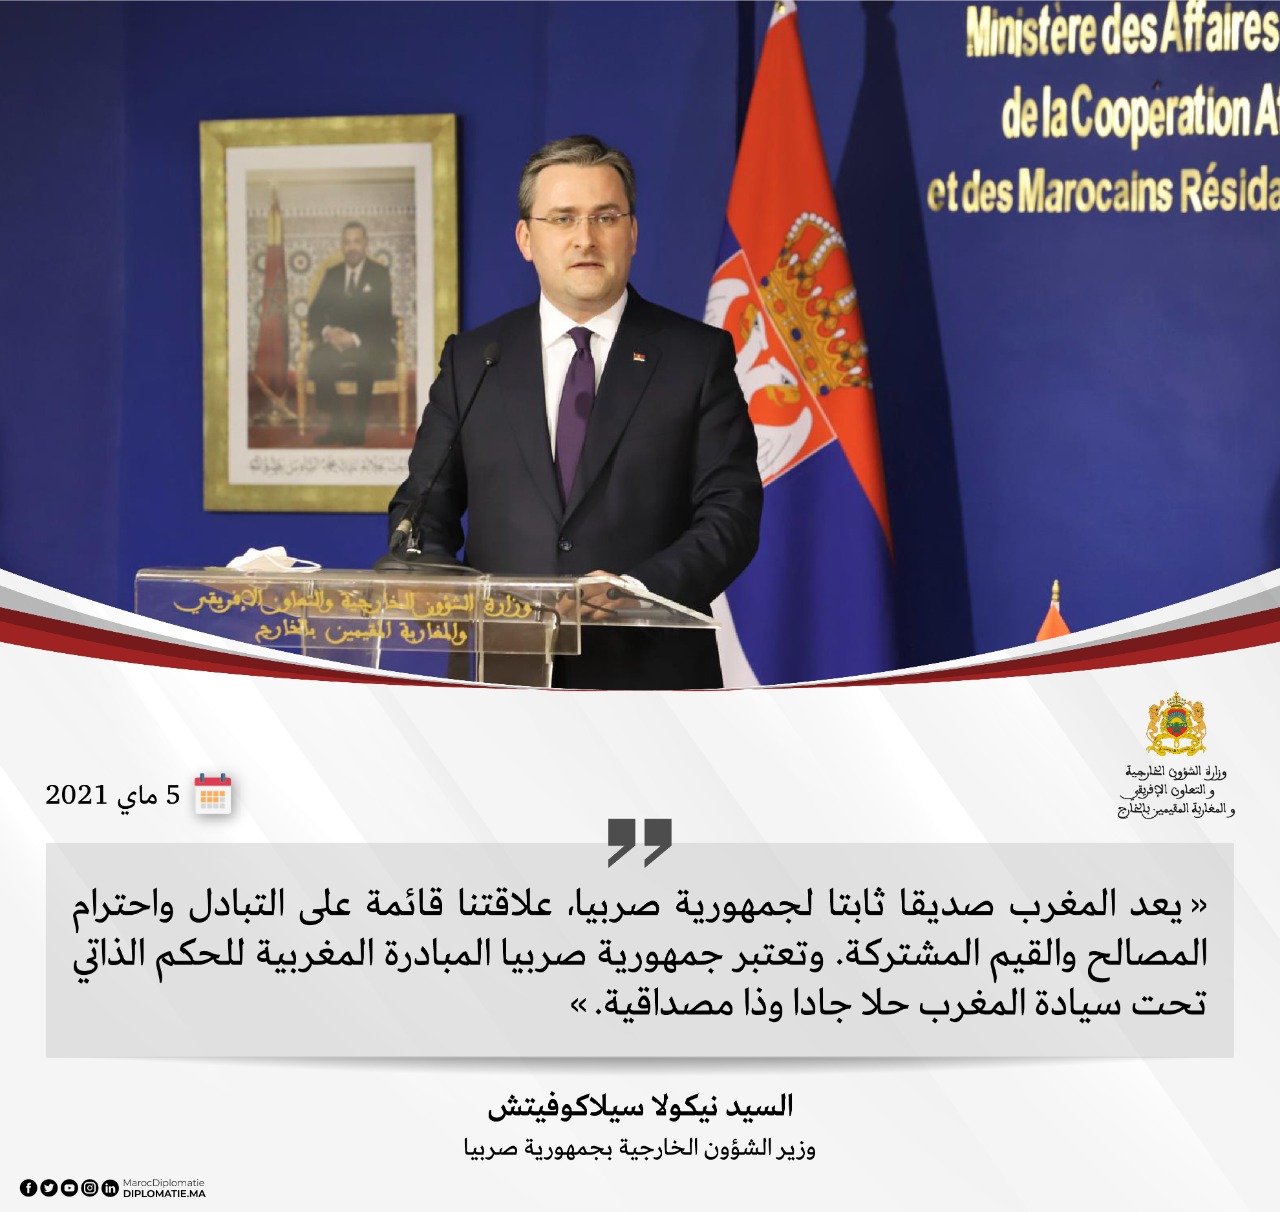 تصريح السيد نيكولا سيلاكوفيتش، وزير الشؤون الخارجية بجمهورية صربيا.